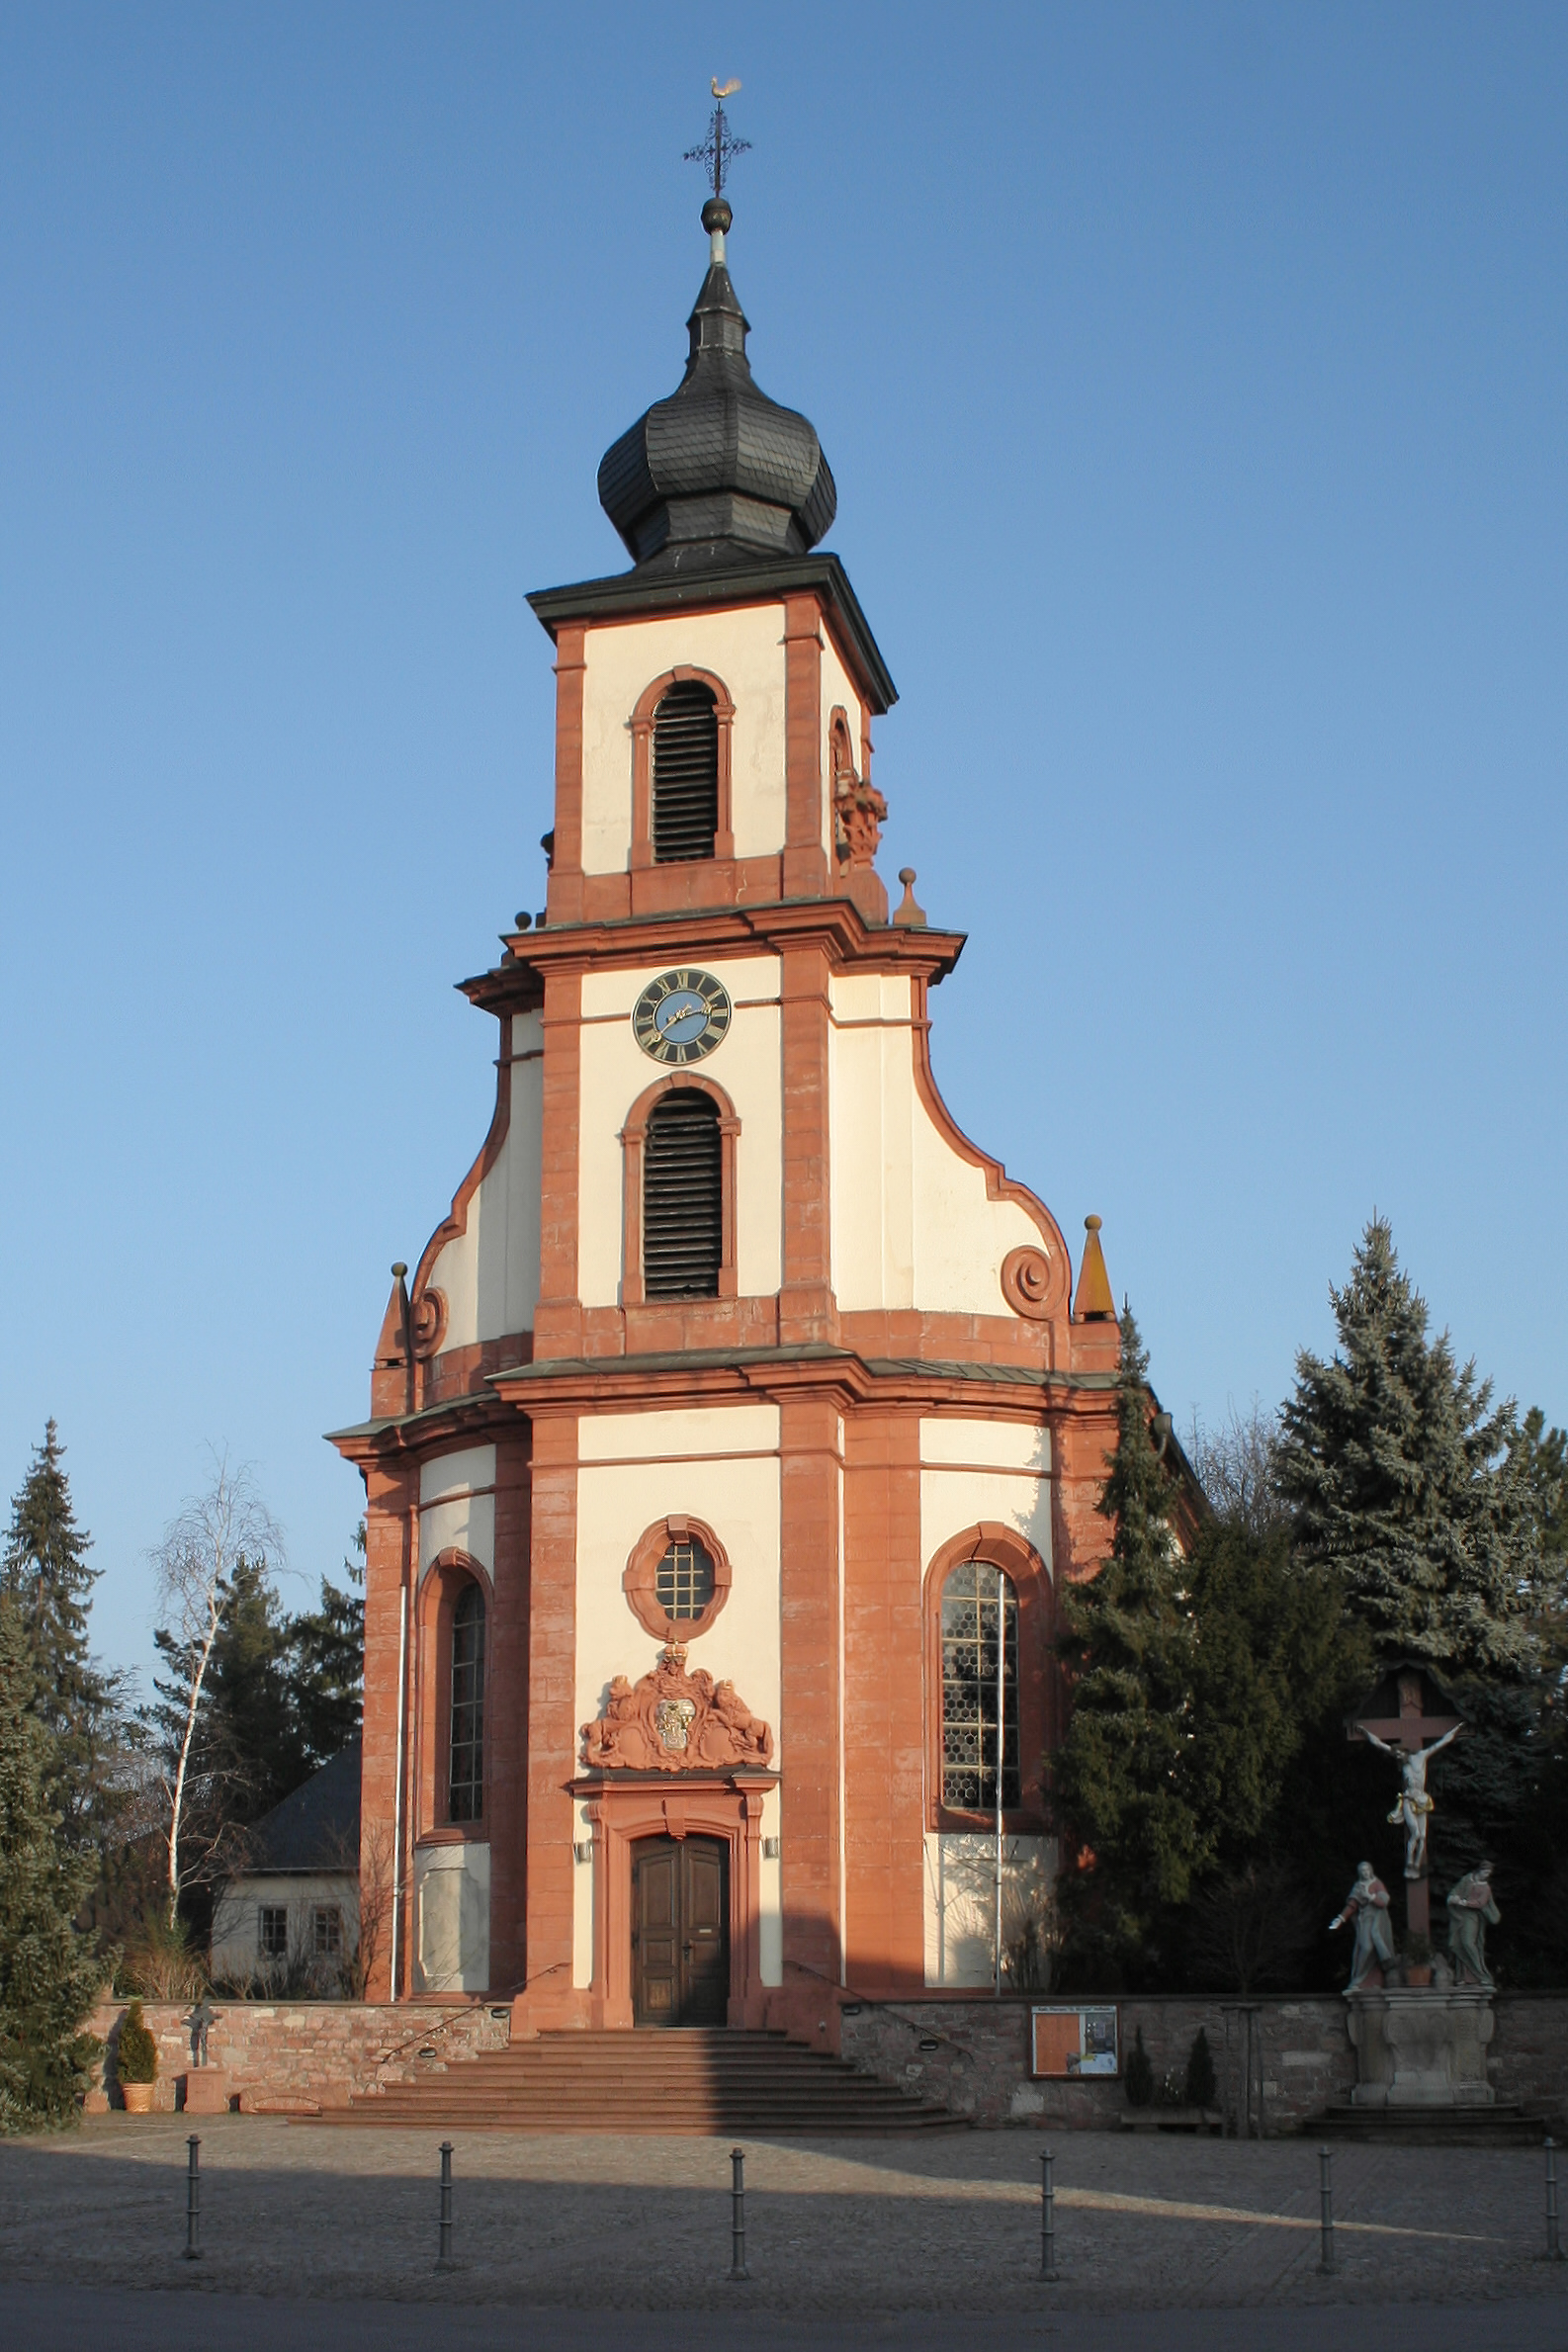 Kirche Hofheim- Ried St. Michael (c) Von Roland Hahn - Selbst fotografiert, Gemeinfrei, https://commons.wikimedia.org/w/index.php?curid=63448752